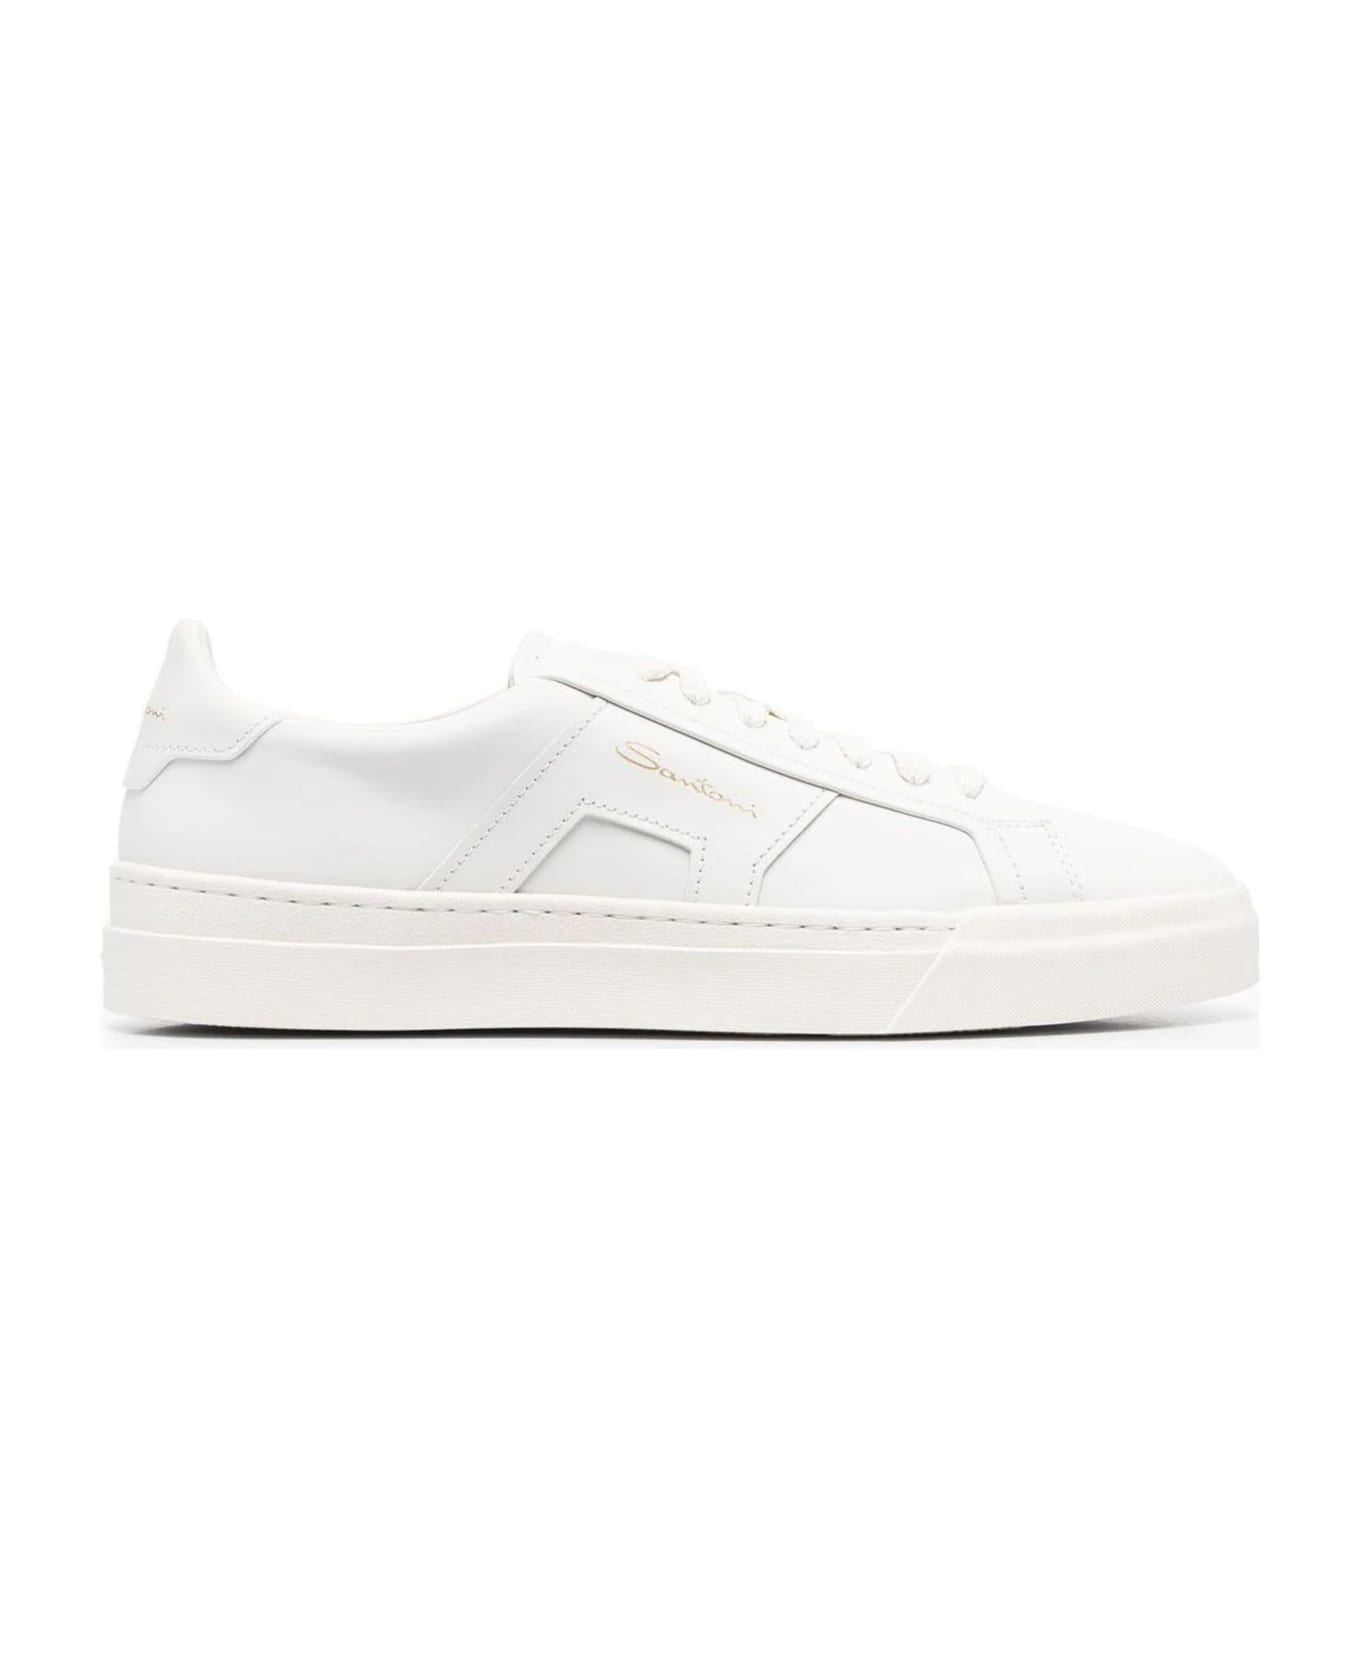 Santoni White Leather Sneakers - White